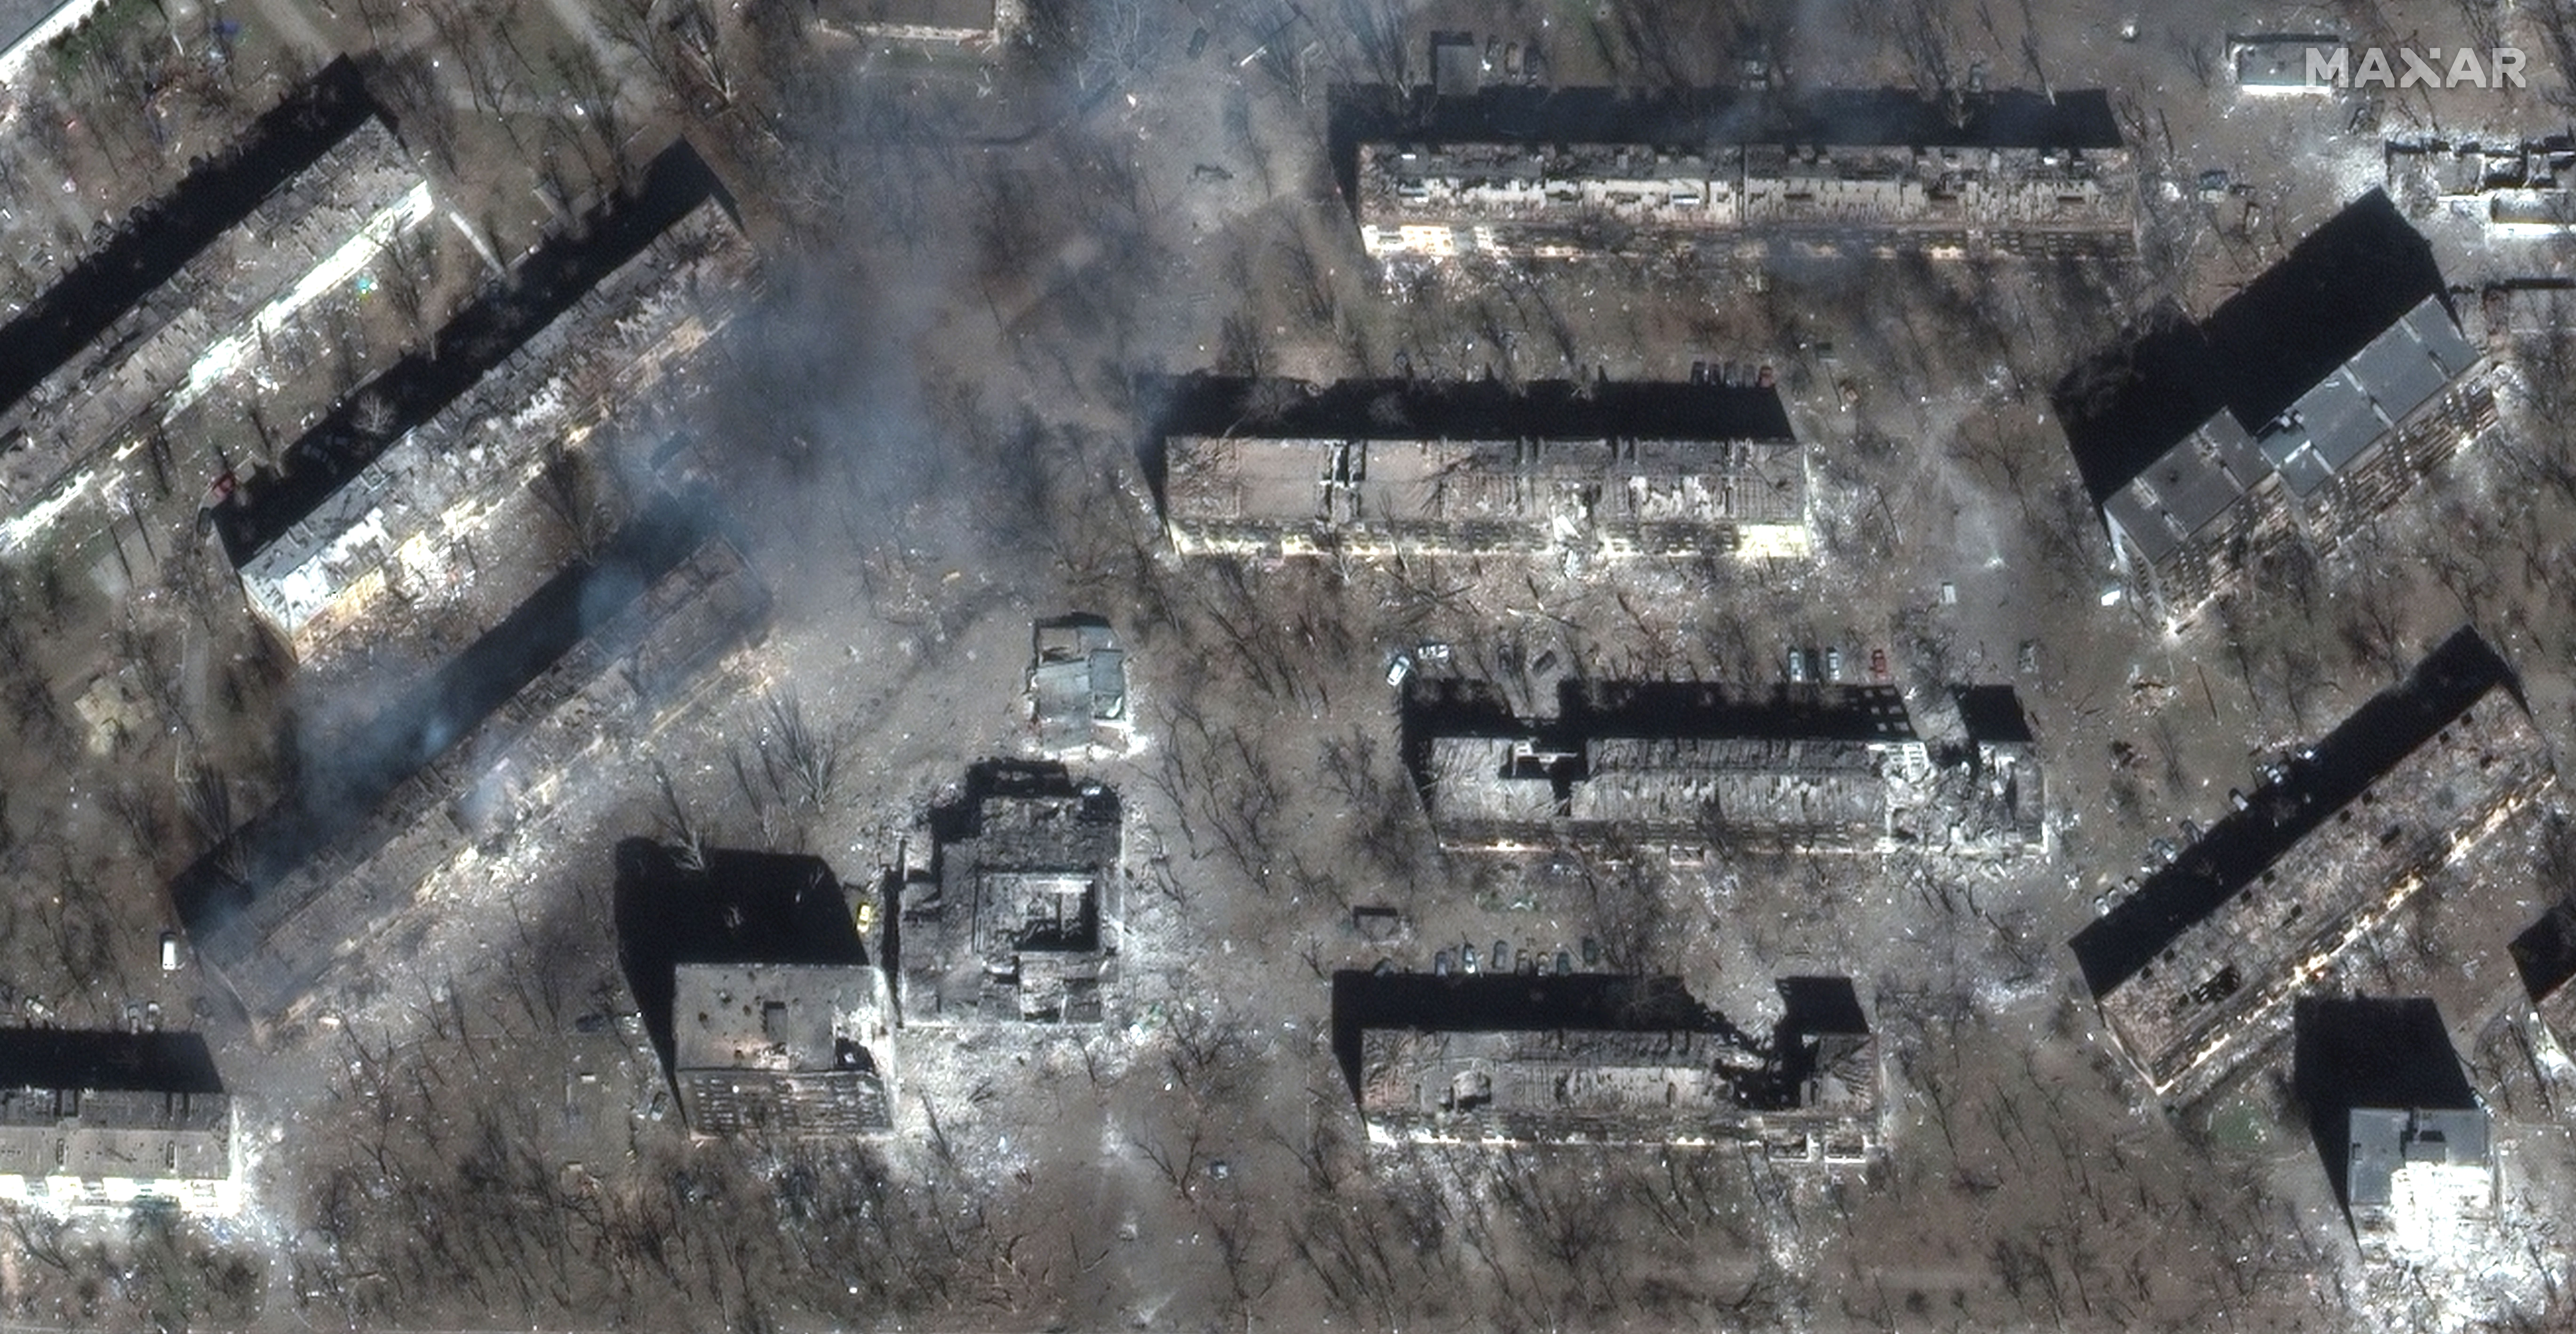     Vernietiging van appartementsgebouwen in Mariupol op 29 maart.